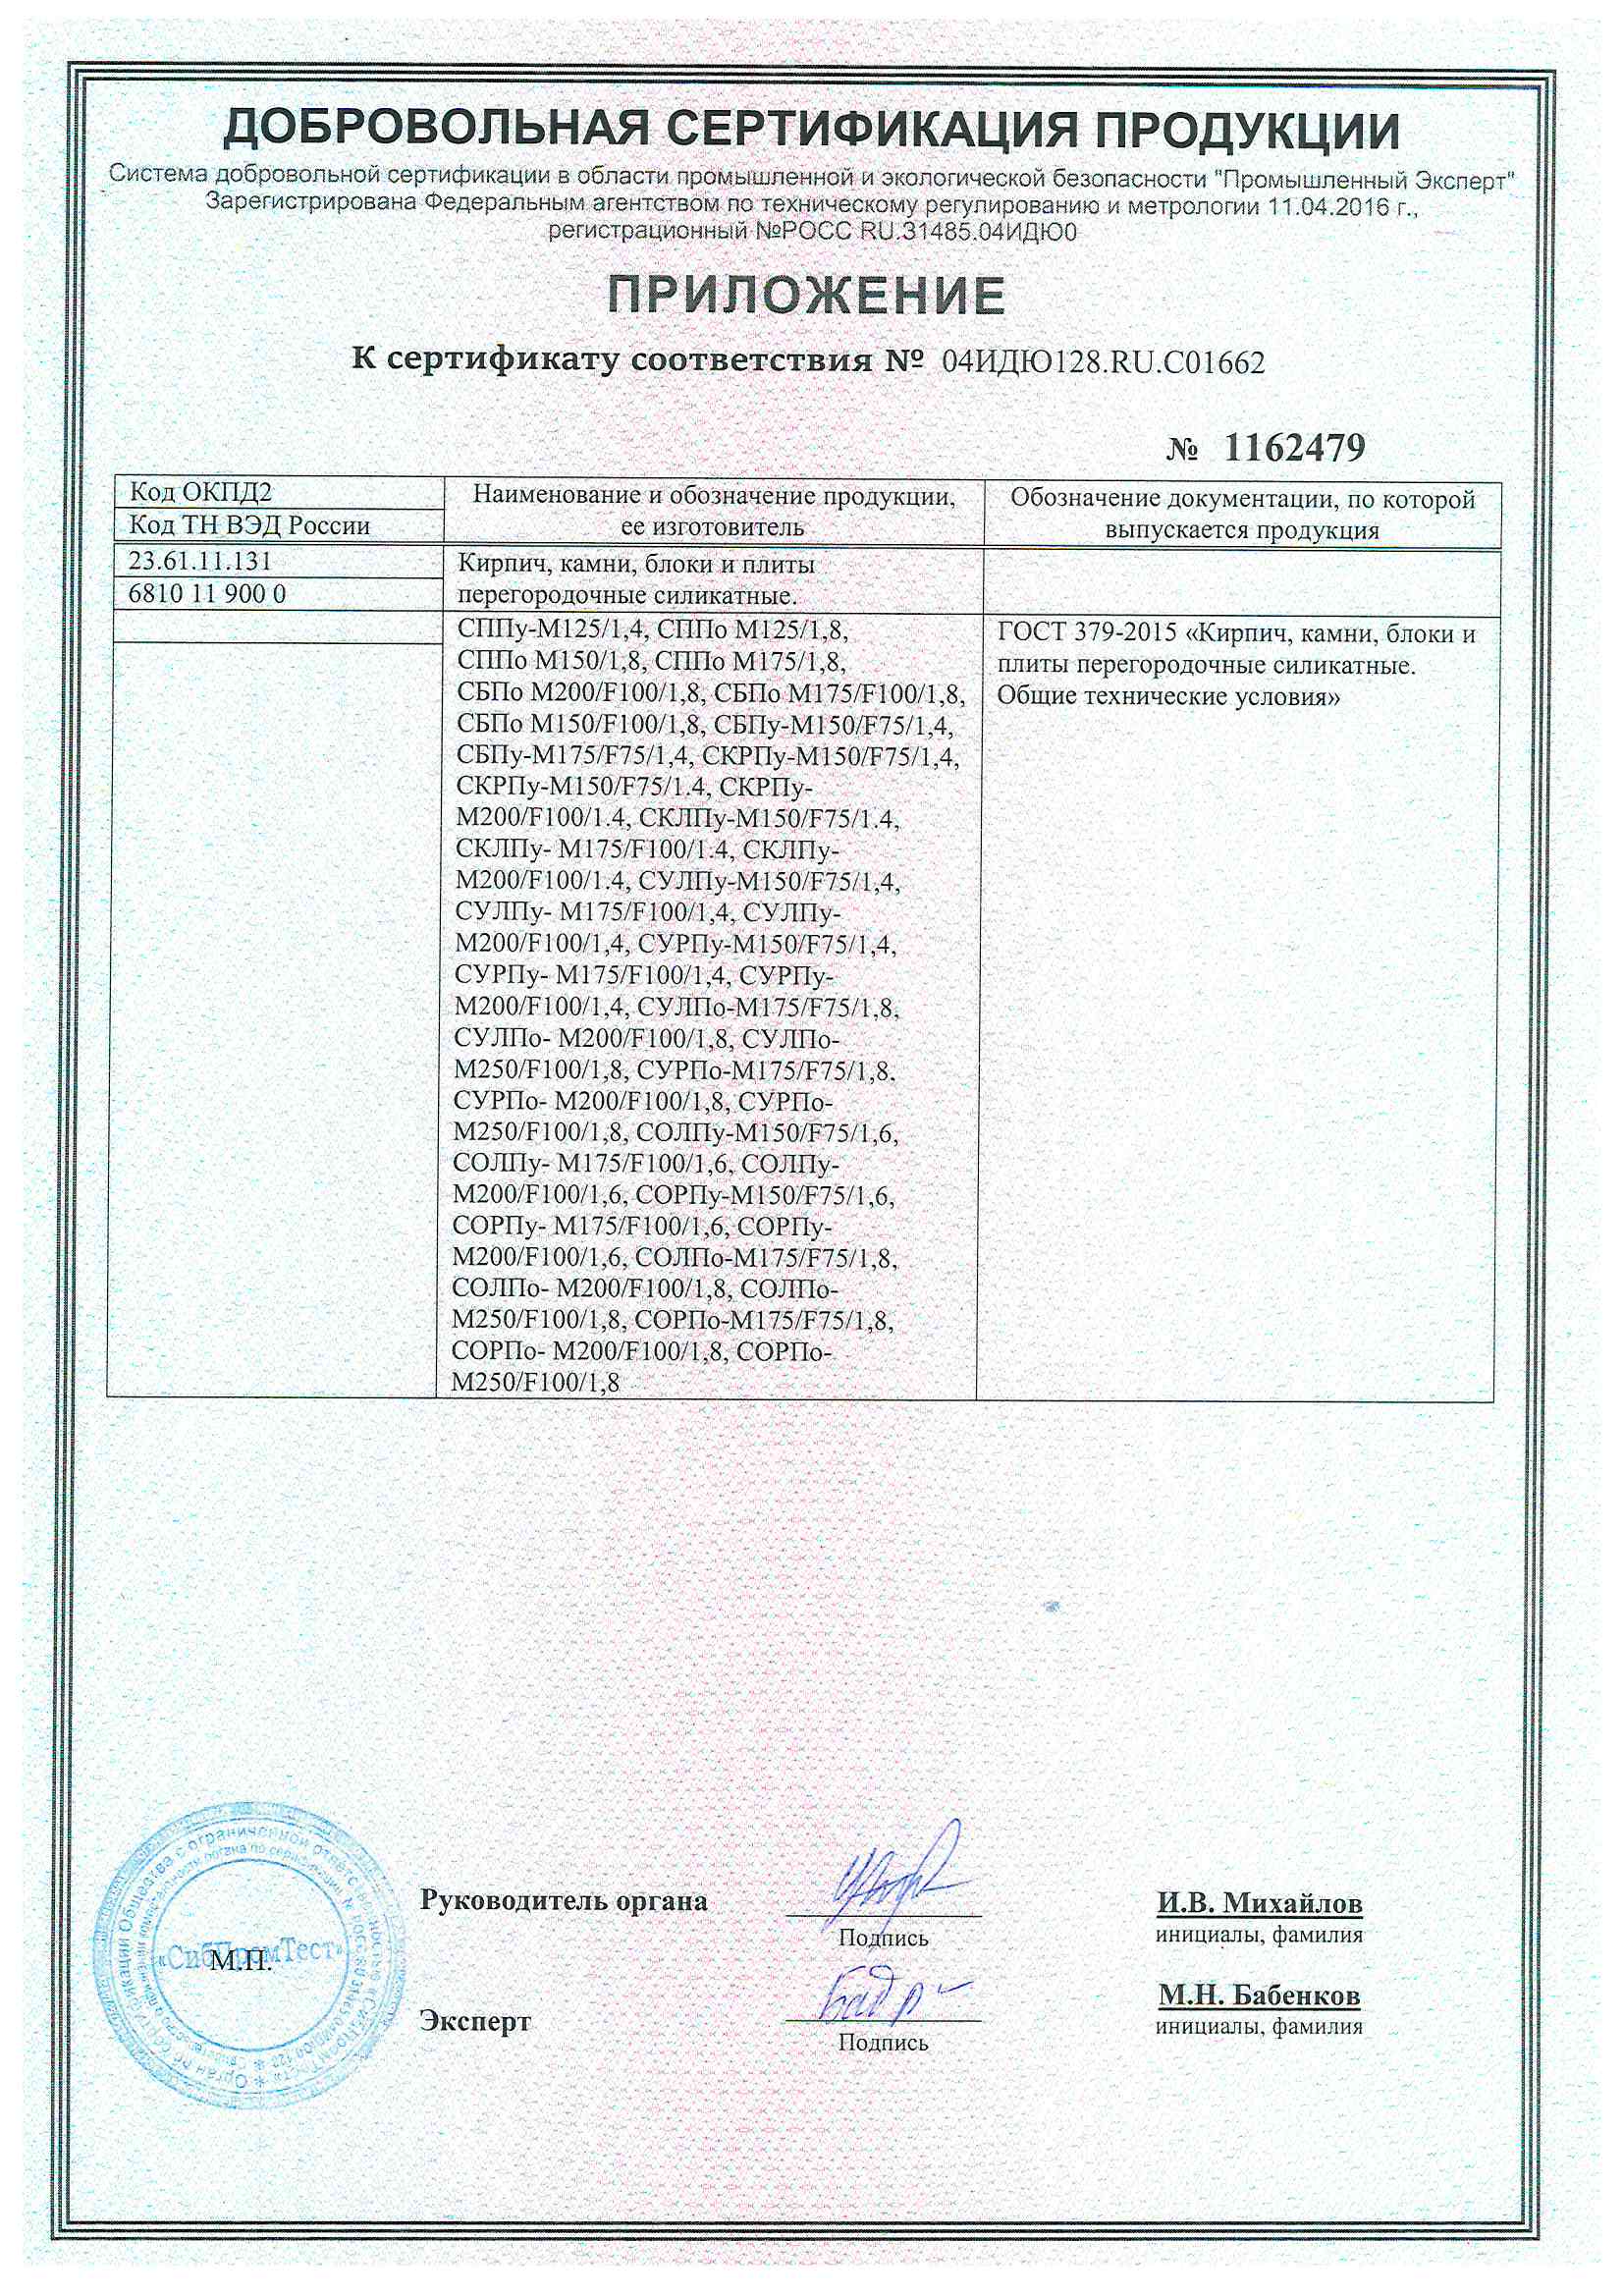 Сертификат ГОСТ 379-2015 кирпич силикатный, блоки 2